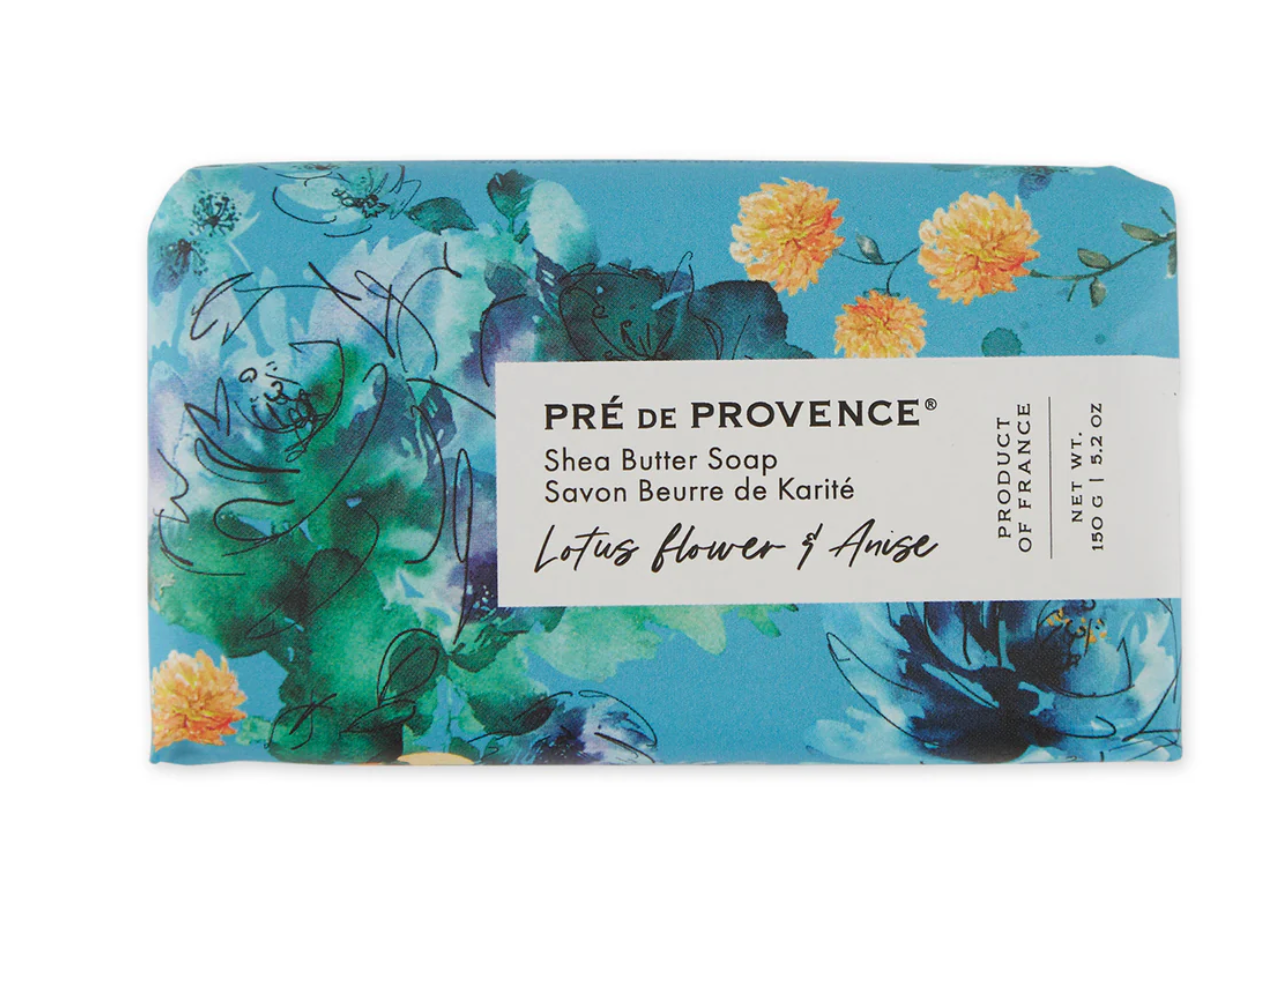 Lotus Flower & Anise soap bar by Pré de Provence